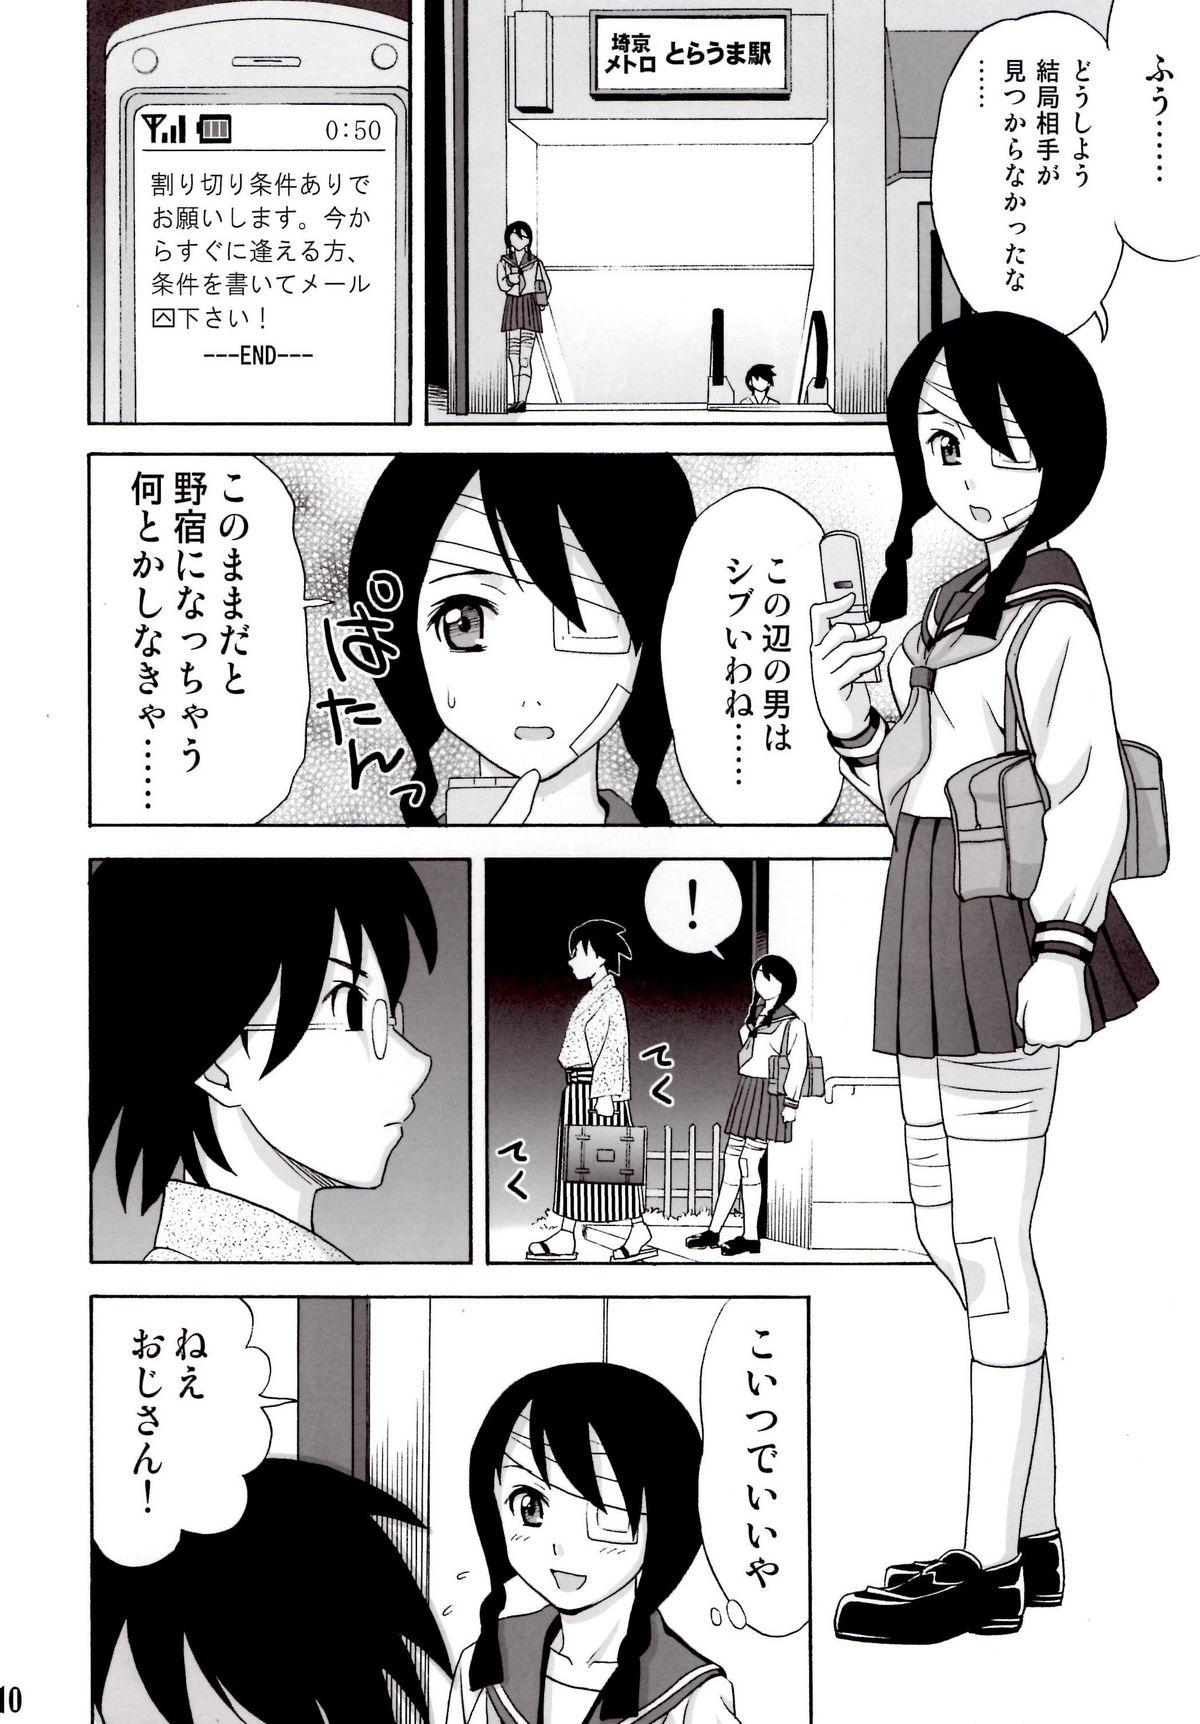 Pija Ai no abiru densetsu - Sayonara zetsubou sensei Transgender - Page 9